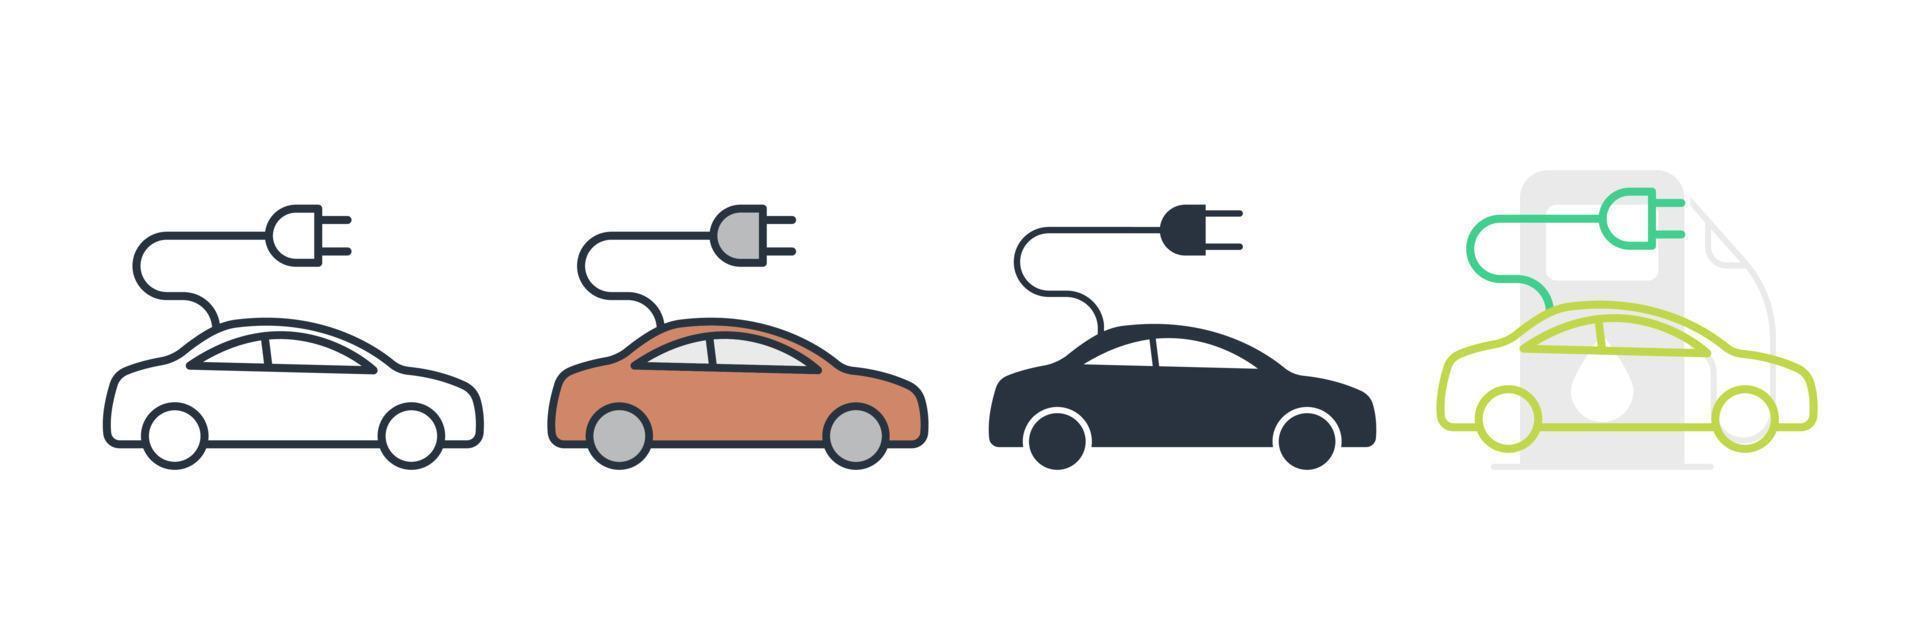 elektrische auto pictogram logo vectorillustratie. elektrische auto kabel symboolsjabloon voor grafische en webdesign collectie vector